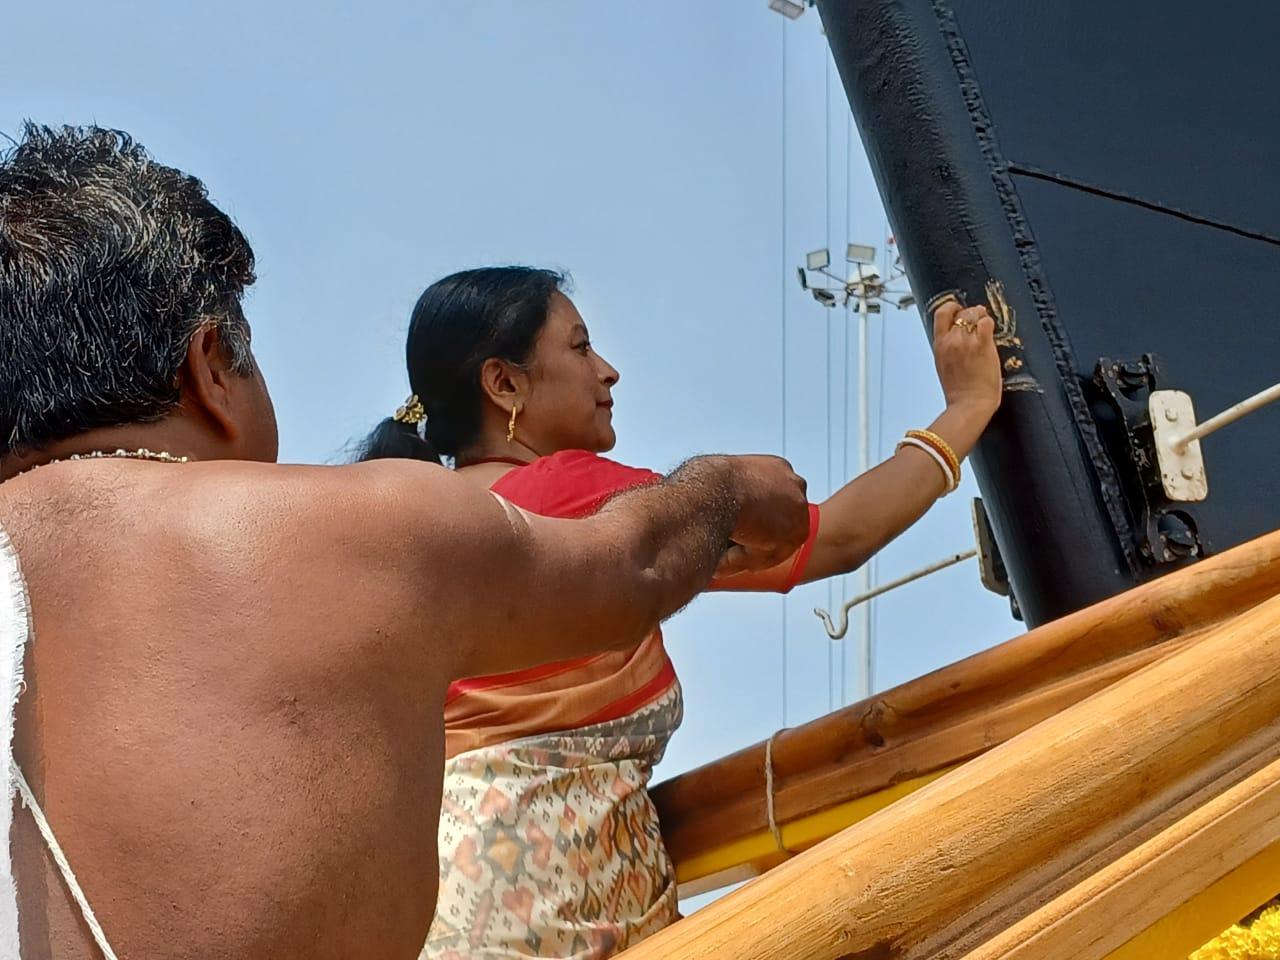 प्राचीन भारतीय नौसेना: टैंकाई विधि के माध्यम से समुद्री जहाजों की पुनर्जीवित संस्कृति |_20.1